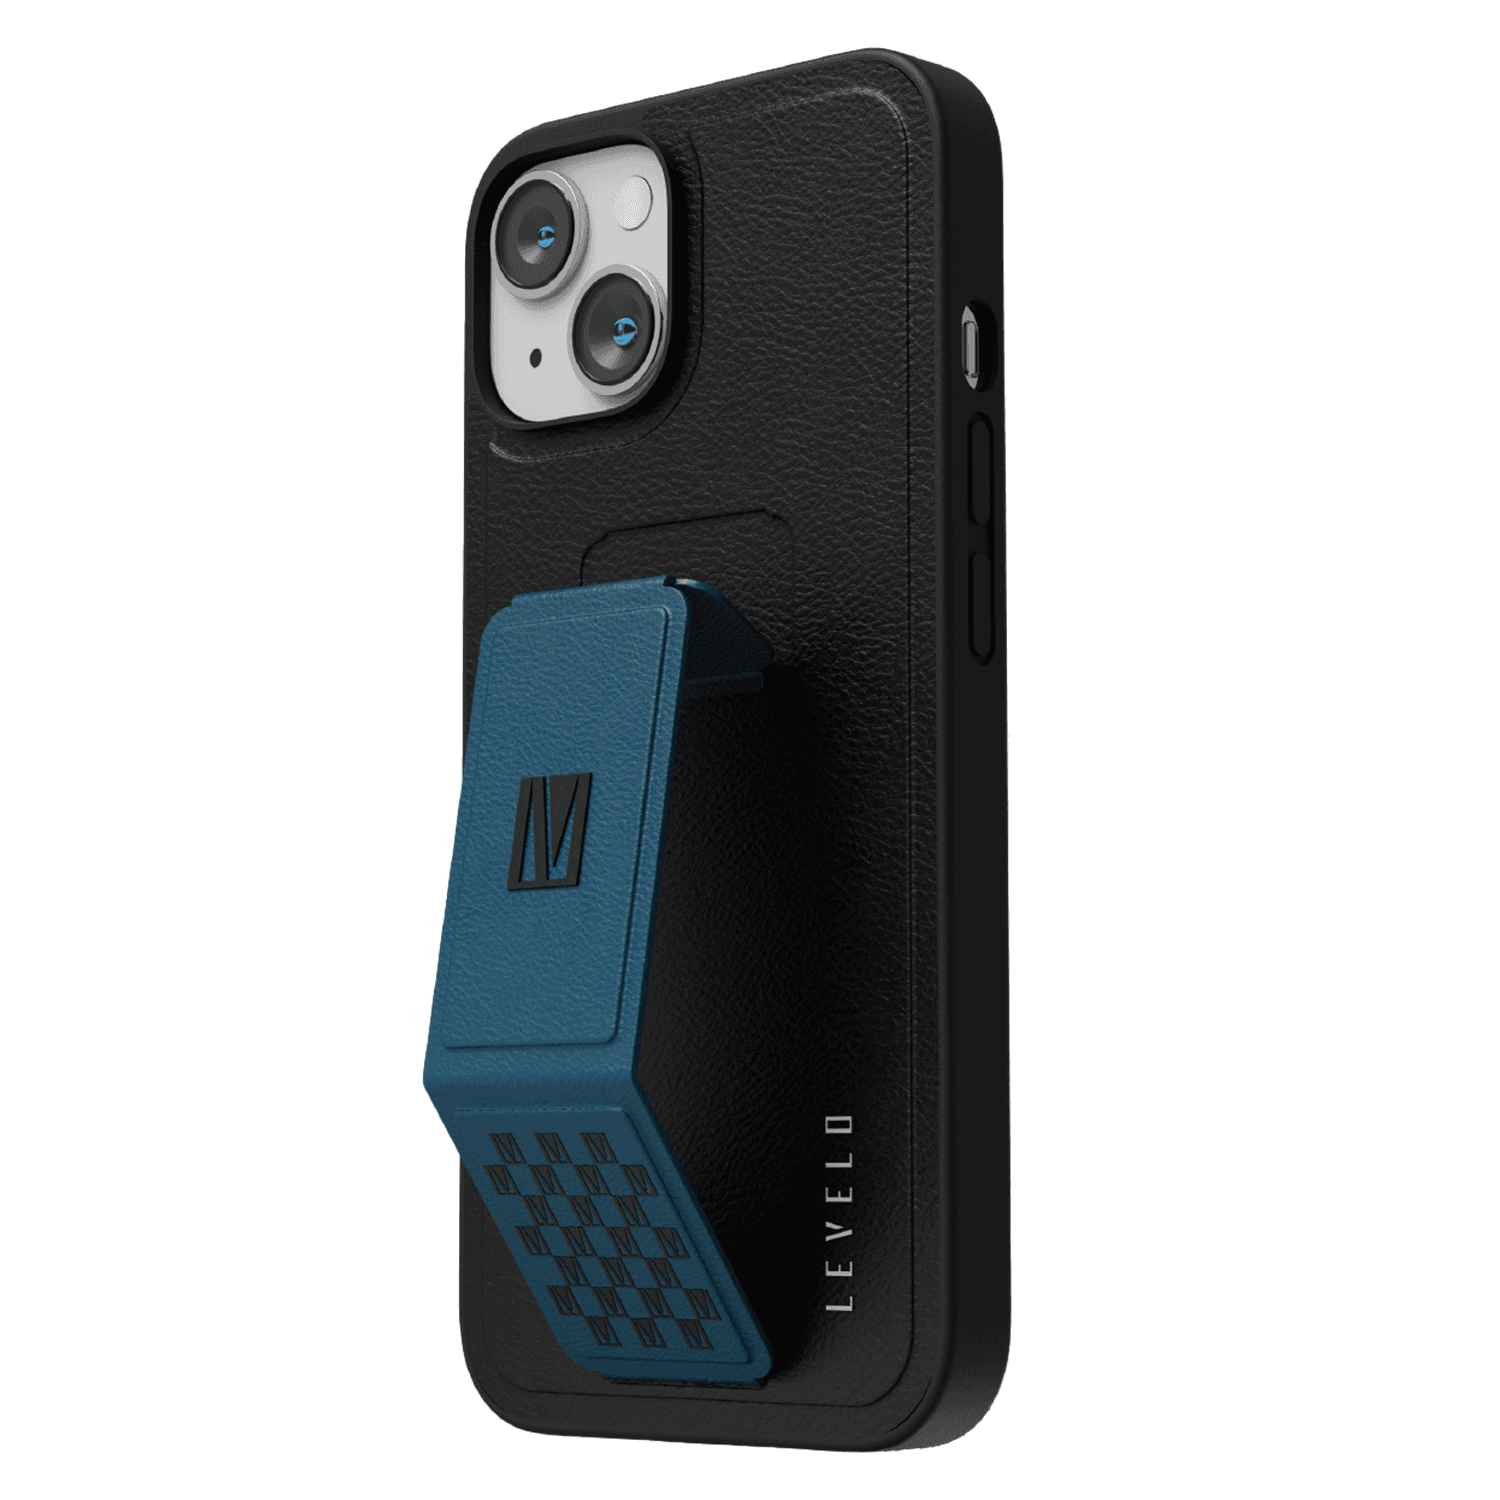 كفر ايفون جلد لجوال ايفون 14 بلاس بلون أسود وأزرق مع حامل تثبيت ليفيلو  Levelo Morphix Gripstand iPhone 14 Plus PU Leather Case Pacific Blue - cG9zdDoxMzk0NTU4